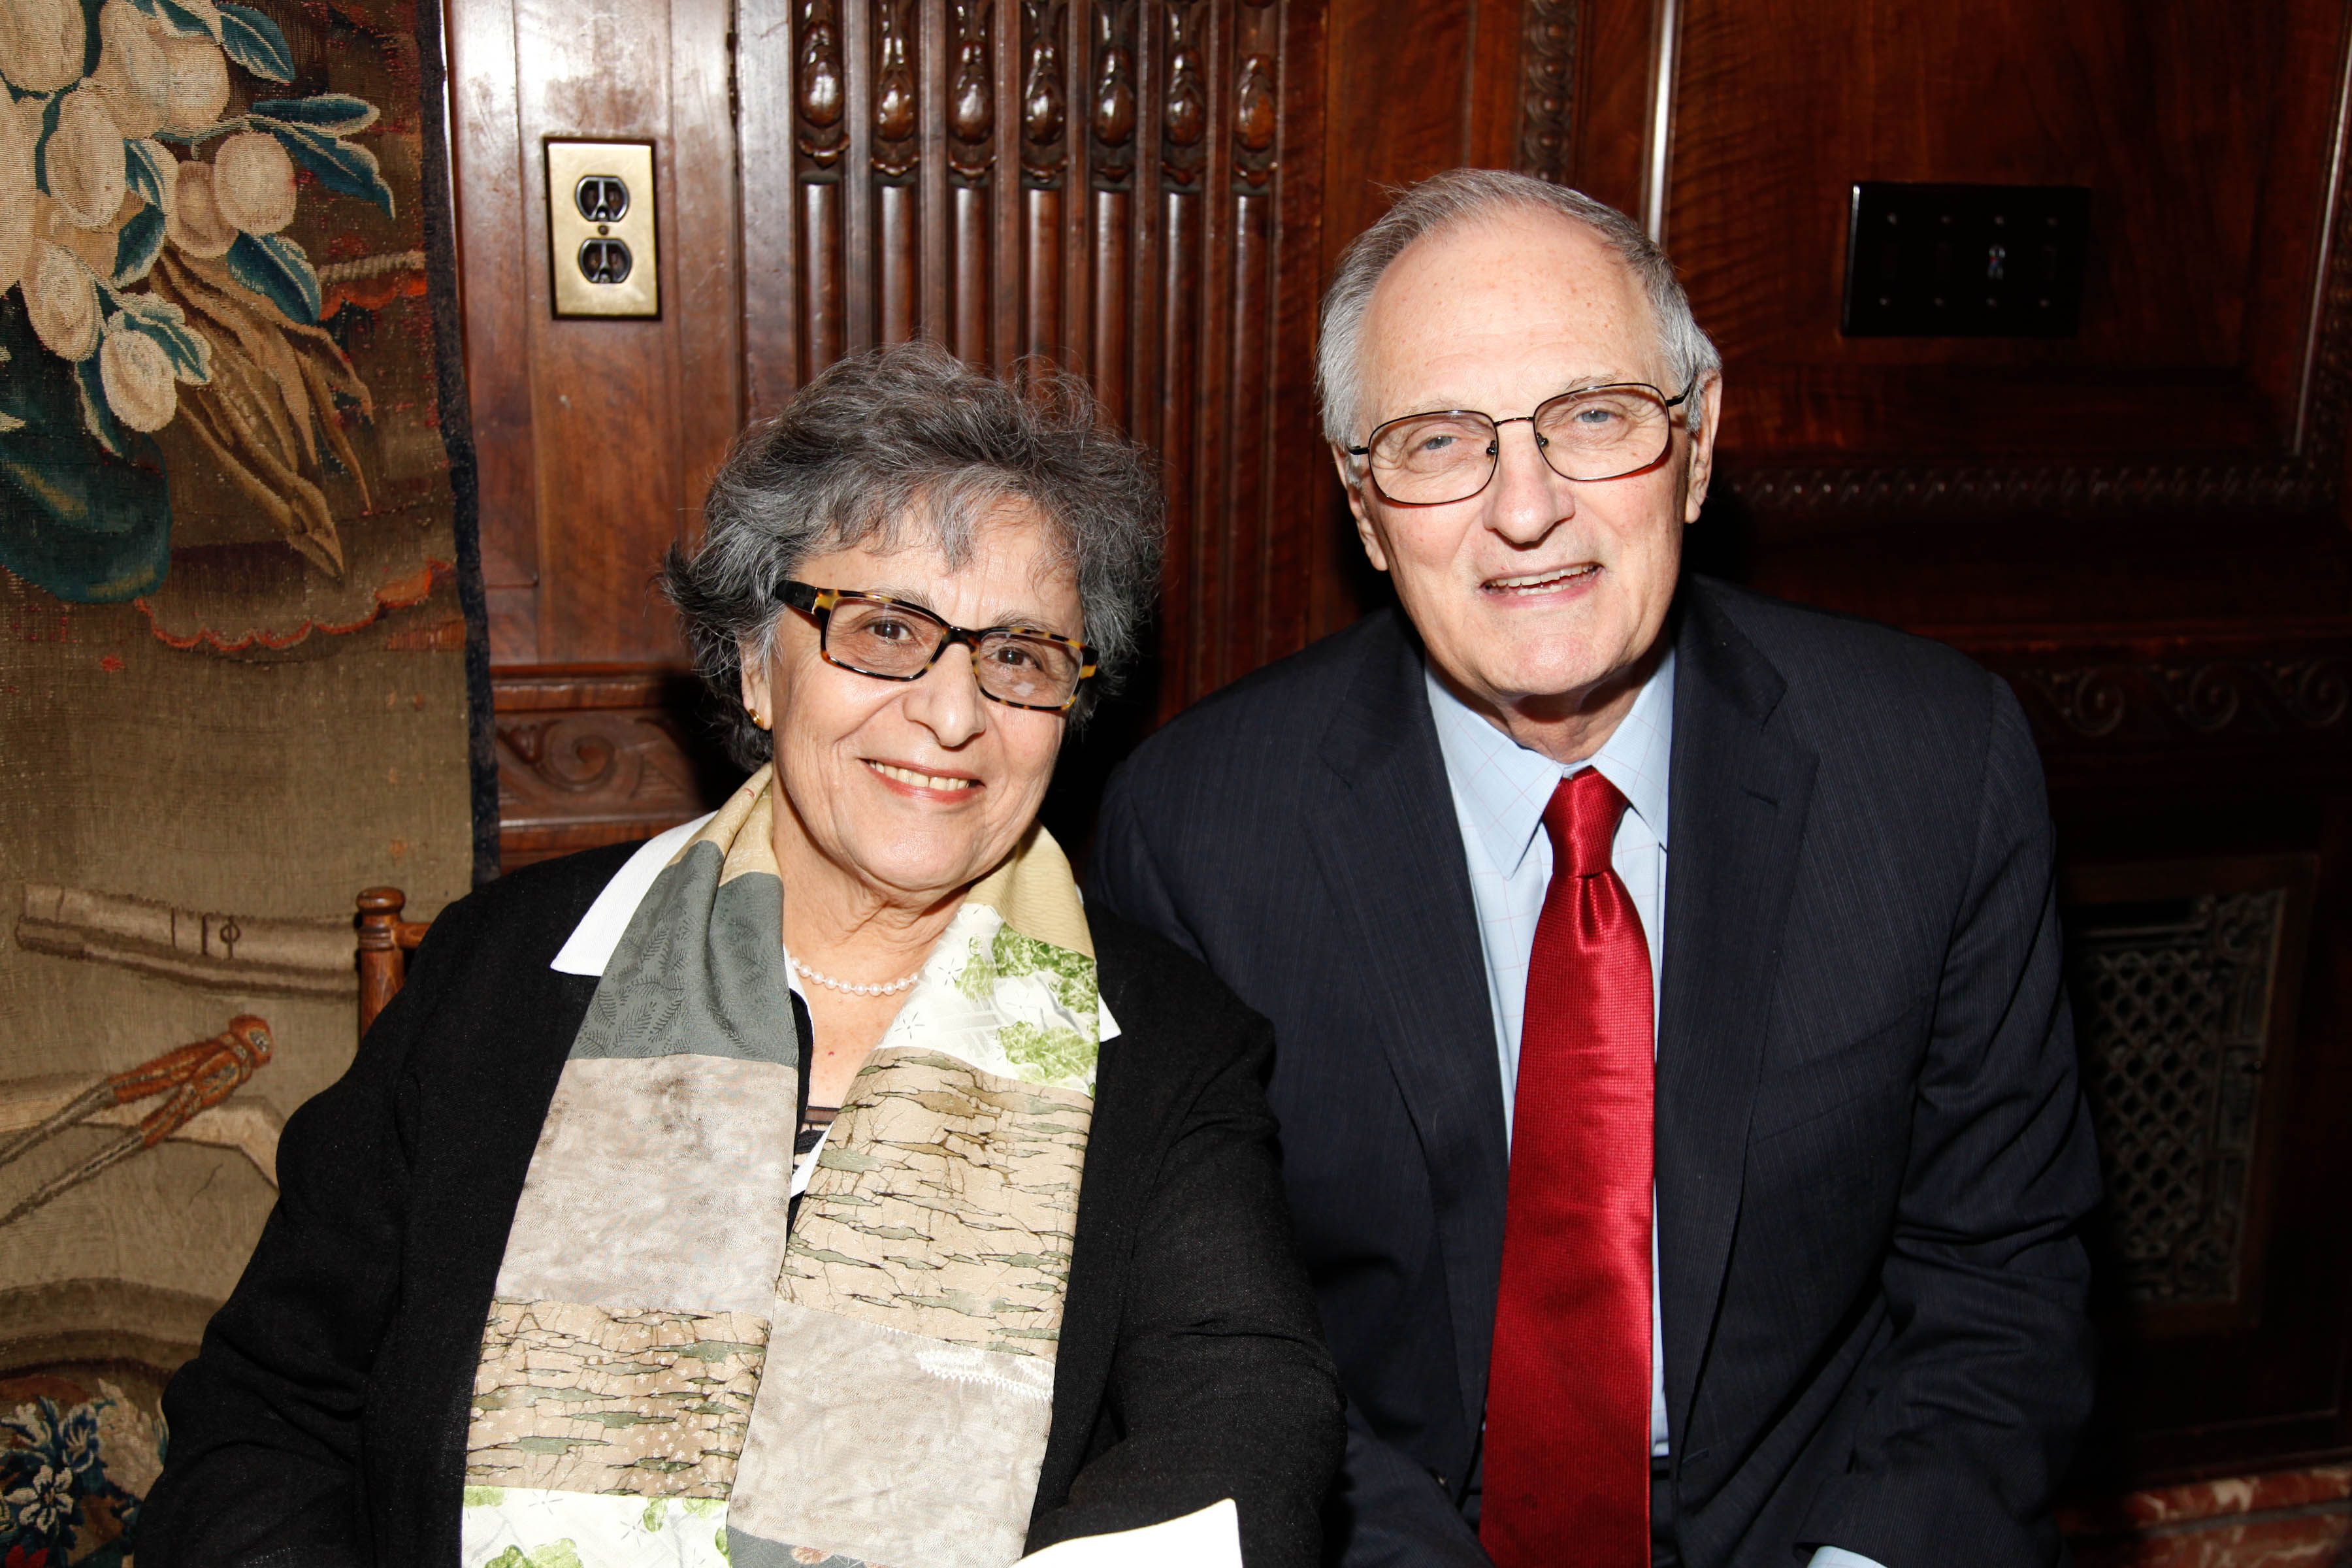 Arlene Alda y Alan Alda en el evento de firma de libros de "This Is A Soul: The Mission of Rick Hodes" de Marilyn Berger en la Biblioteca Pública de Nueva York, el 13 de abril de 2010, en Nueva York. | Foto: Getty Images